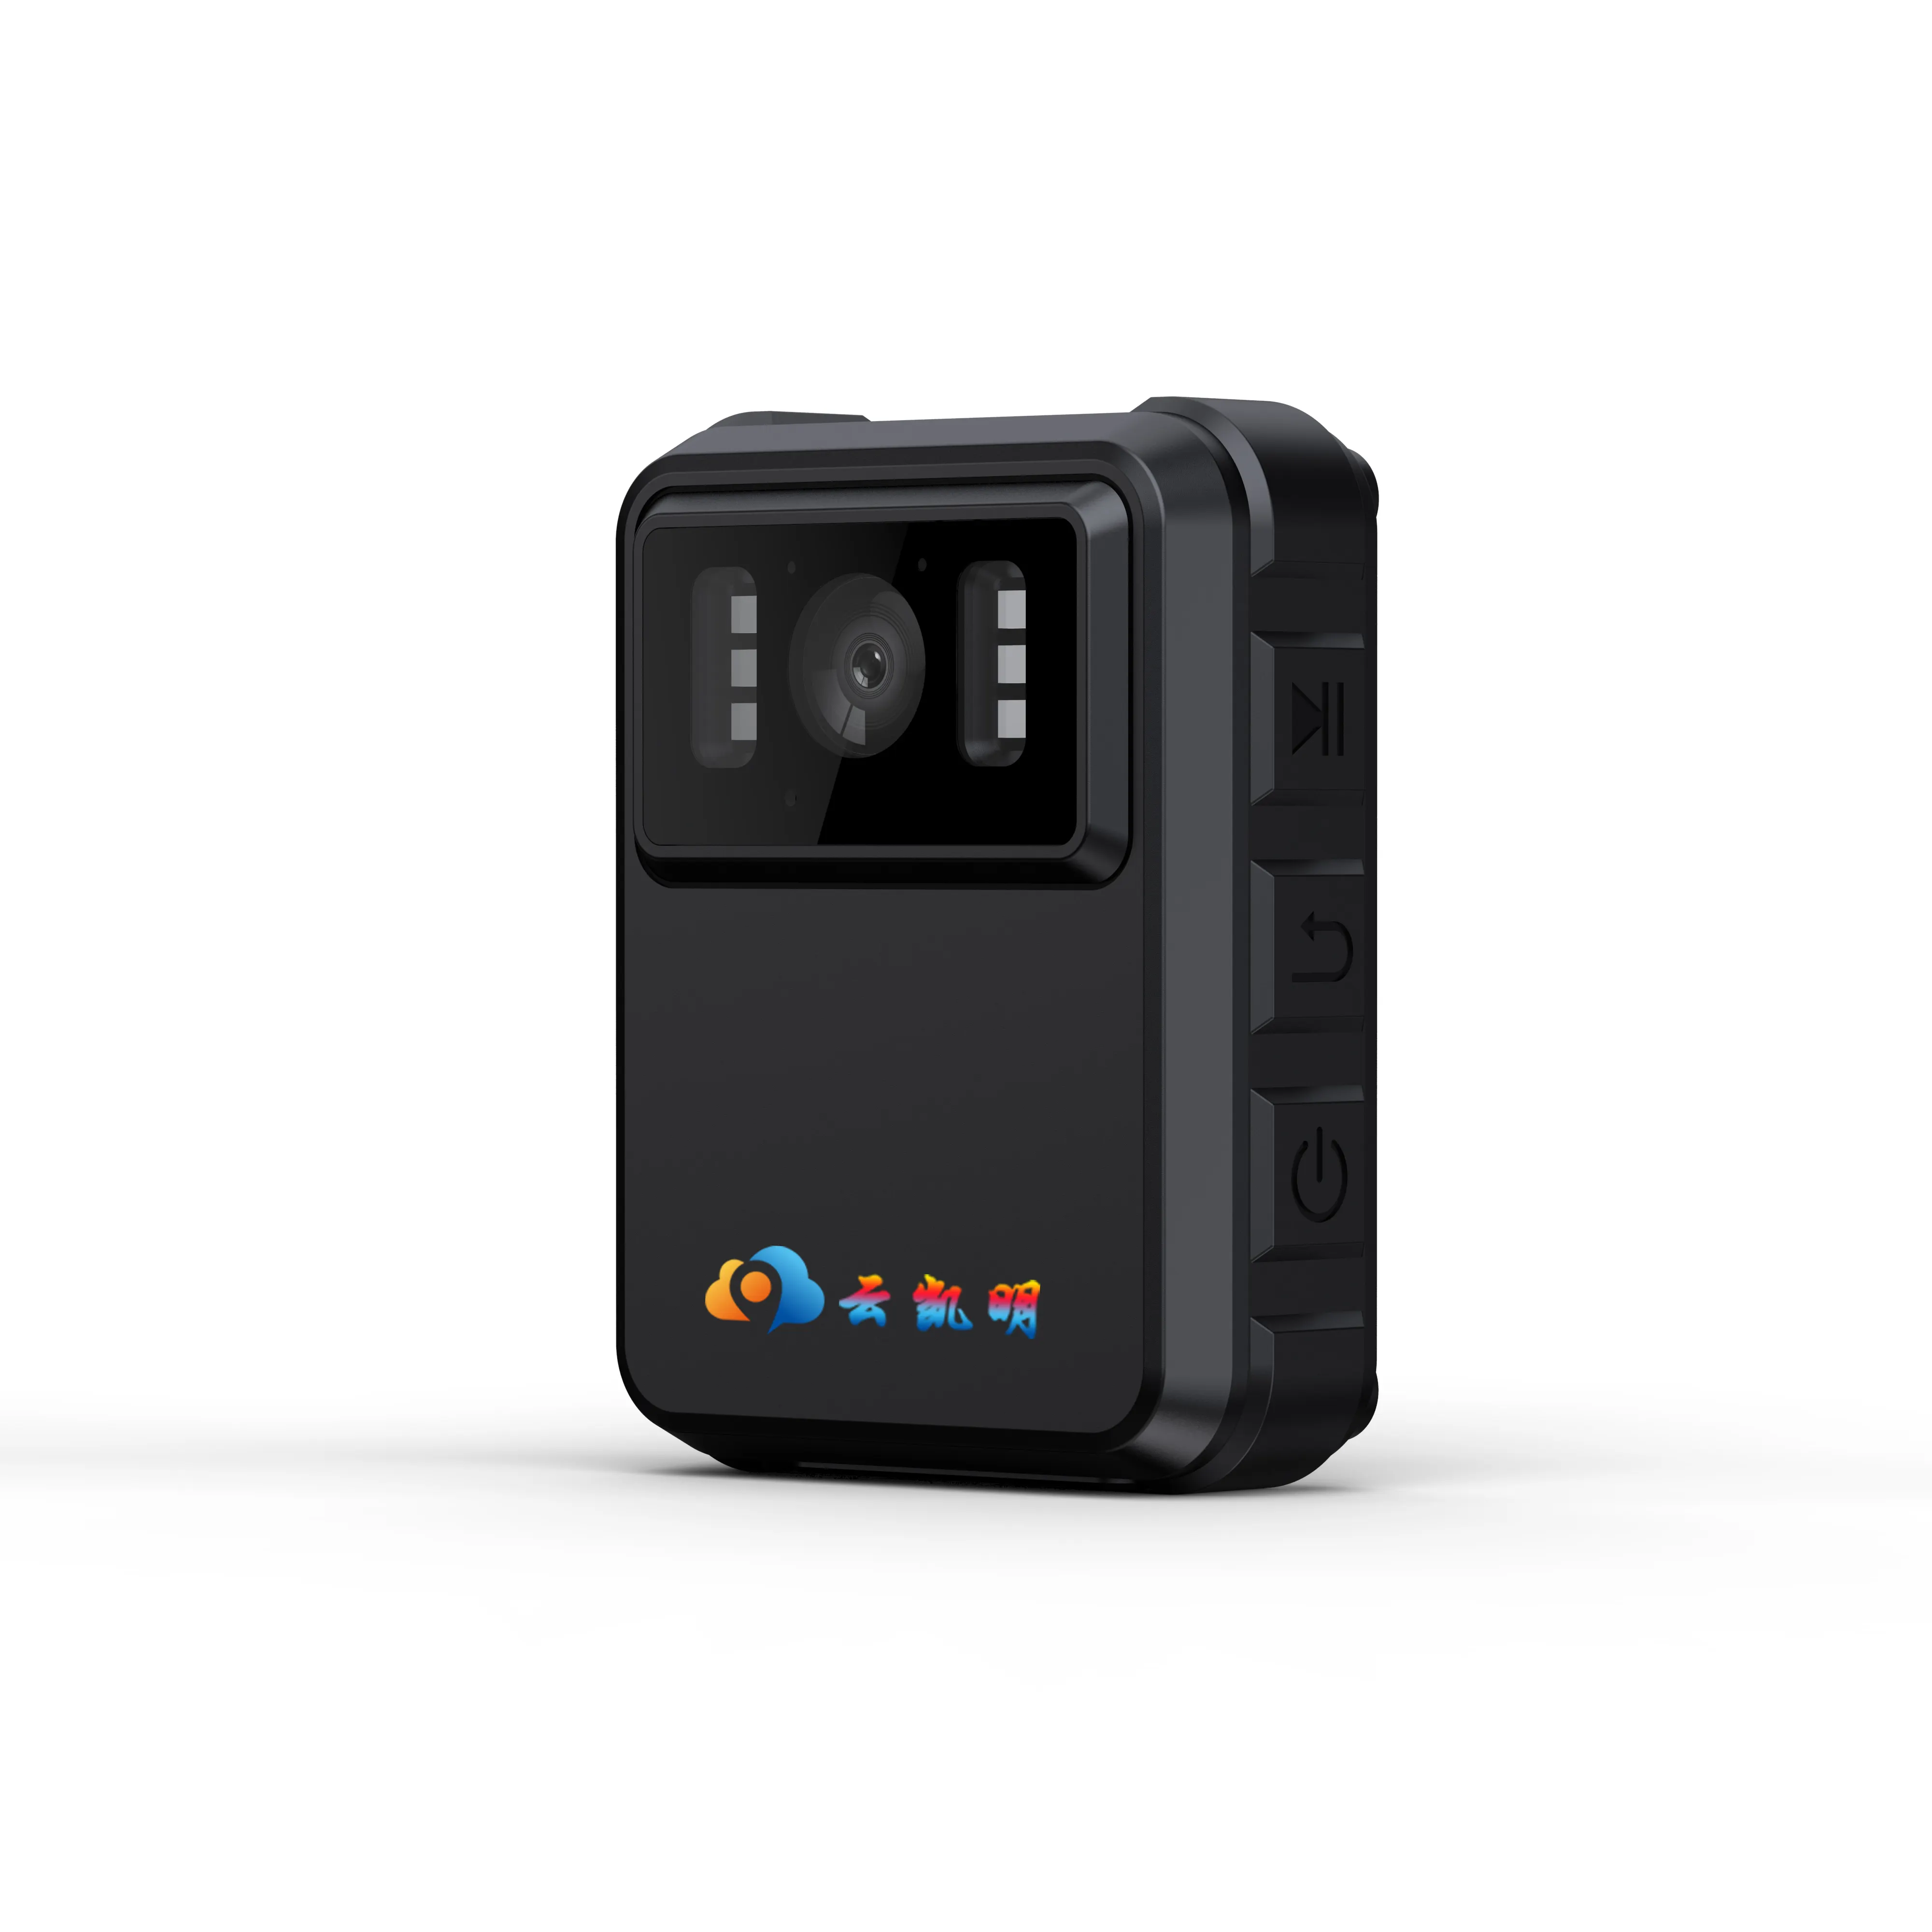 Full HD 1080P wifi-personalizza ad alta risoluzione iP65 registratore toracico impermeabile mini videocamere di sicurezza videocamera indossata dal corpo